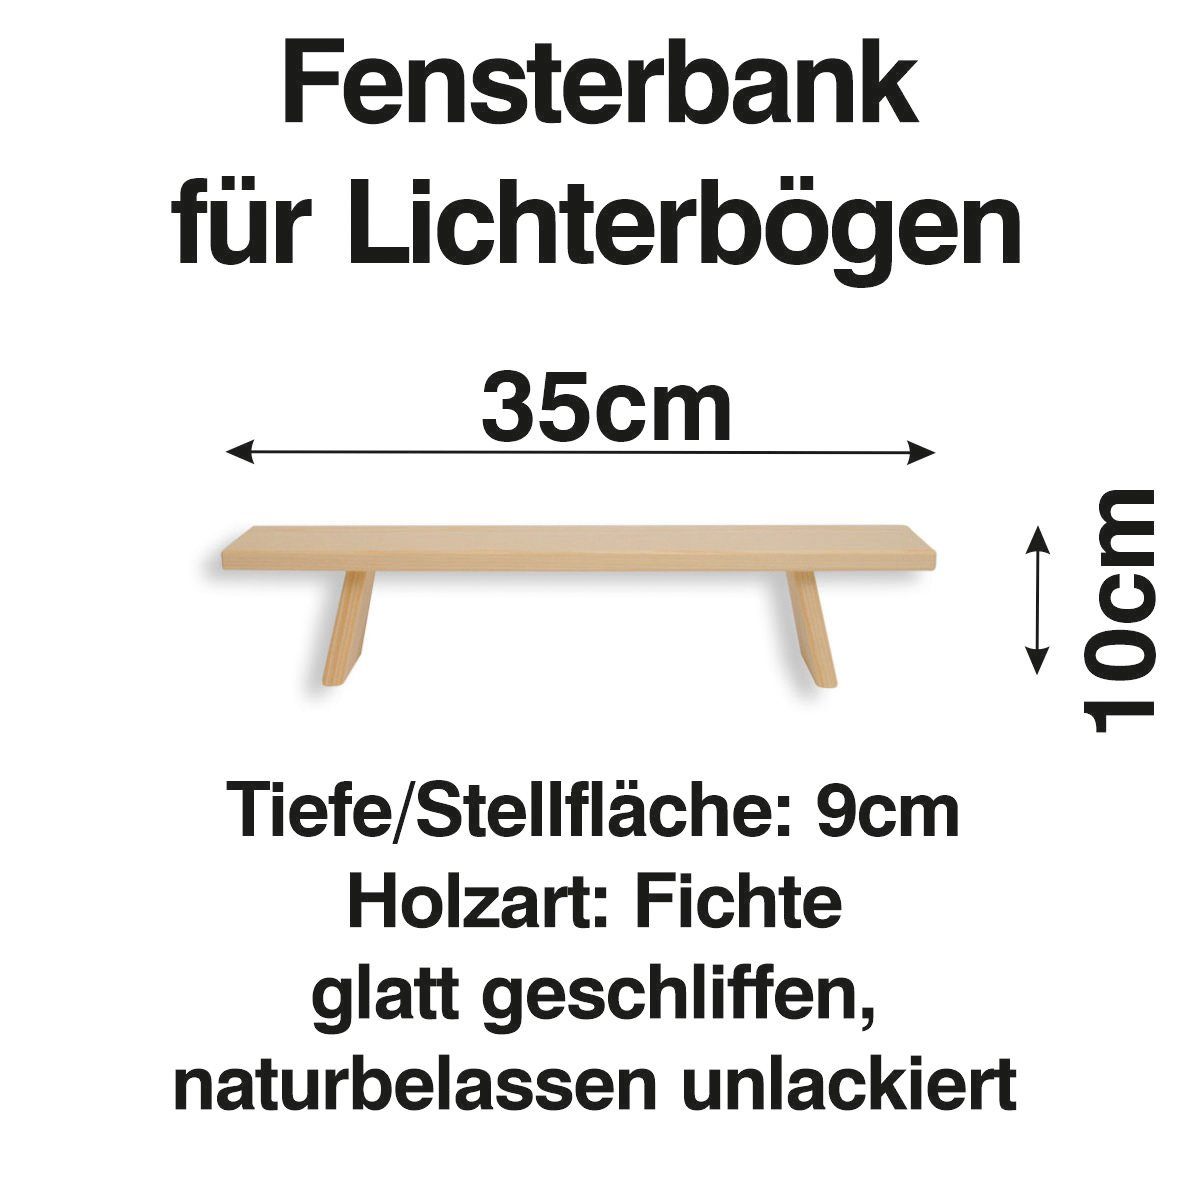 Bank Erhöhung Schwibbogen-Fensterbank Fenst Schenk Lichterbogen 35 cm Holzkunst Schwibbogen